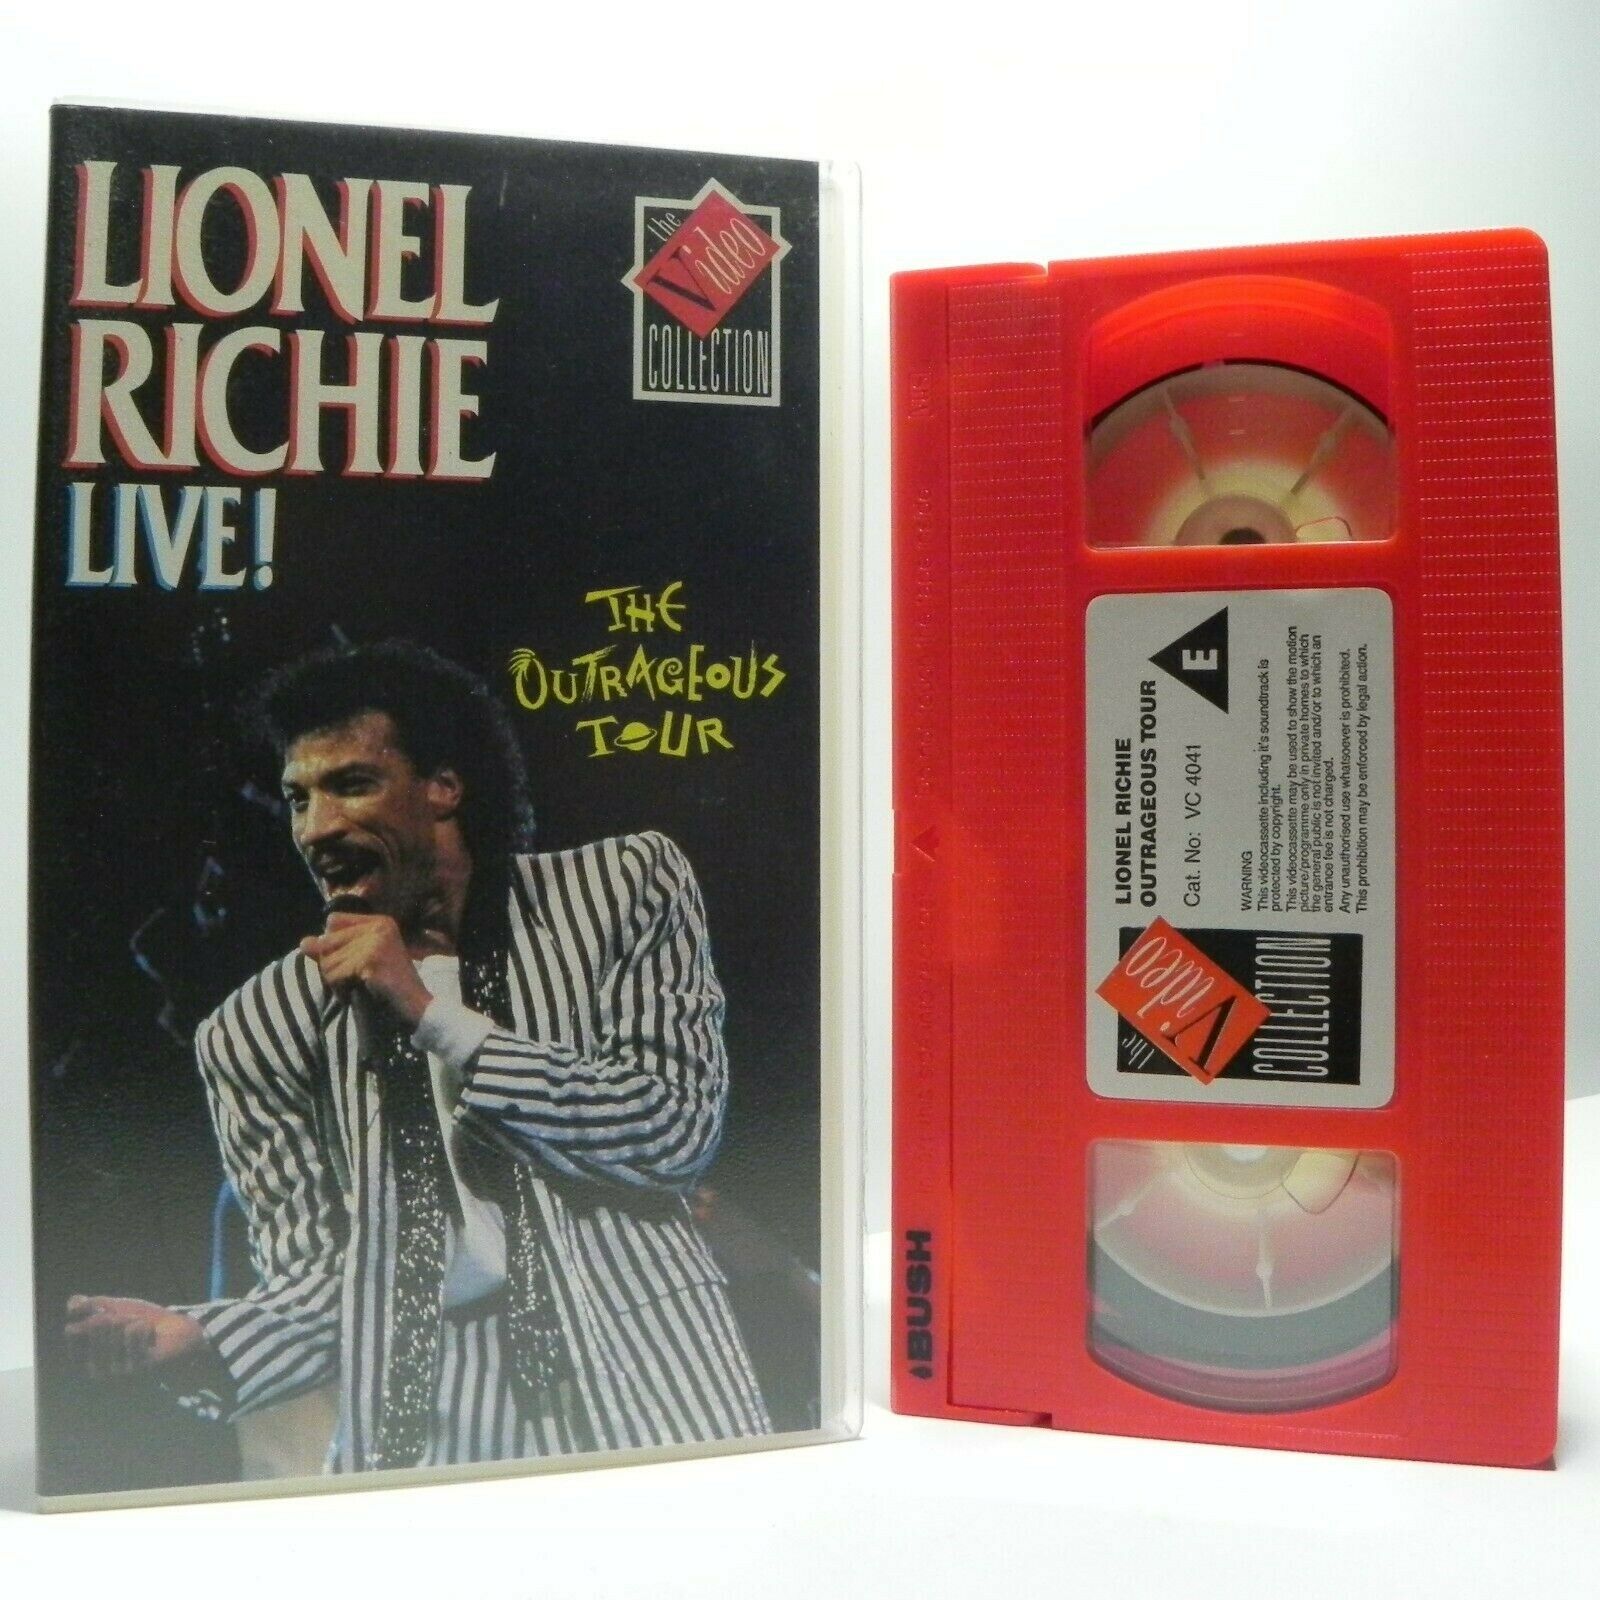 Lionel Richie Live!: The Outrageous Tour - 1987 European Tour - Music - Pal VHS-